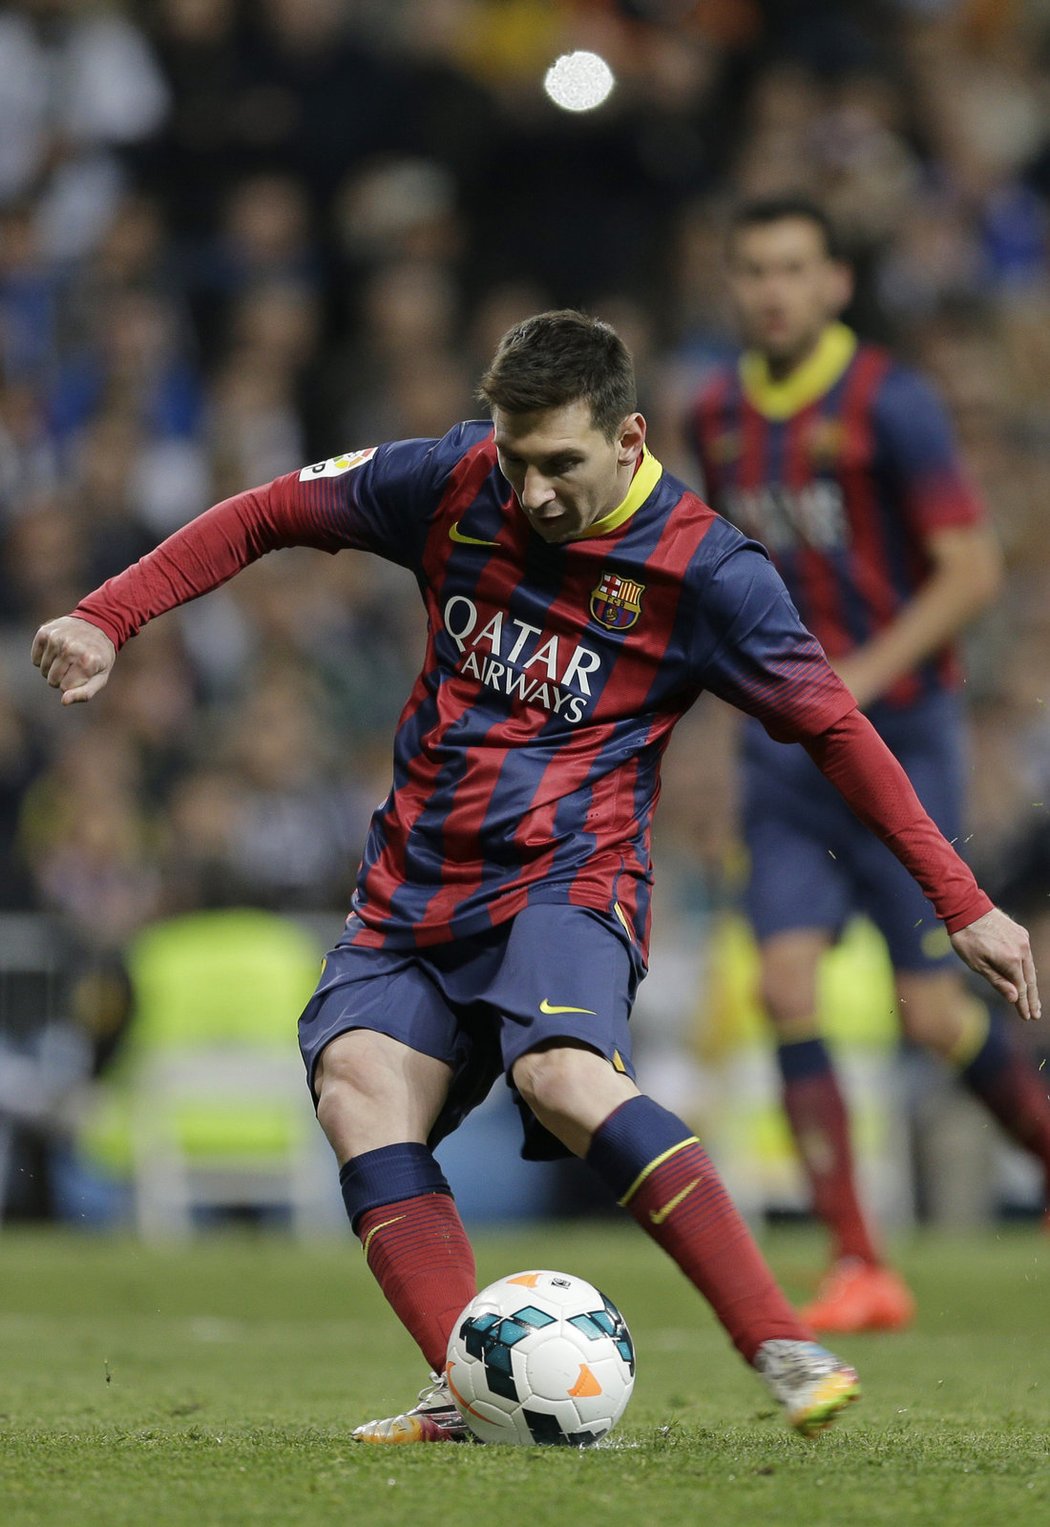 Lionel Messi zaznamenal hattrick a stal se rekordmanem v celkovém počtu vstřelených gólů v El Clásicu v historii (21). Překonal madridskou legendu Alfreda di Stéfana